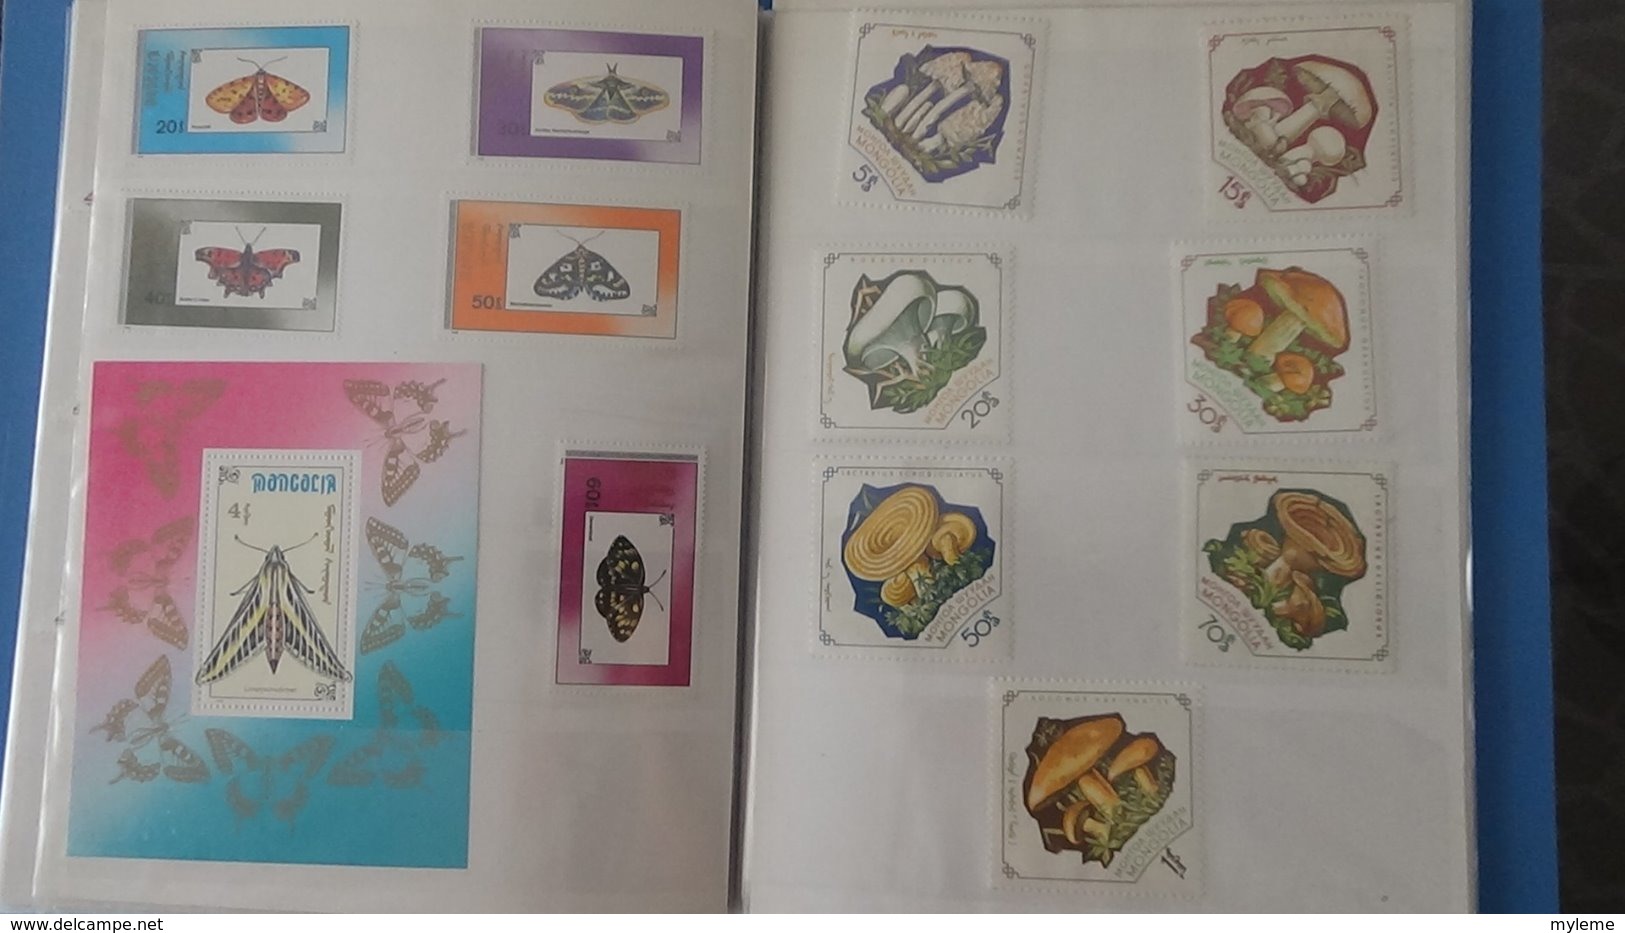 Petite collection de MONGOLIE en timbres et blocs ** dans 3 carnets . A saisir !!!